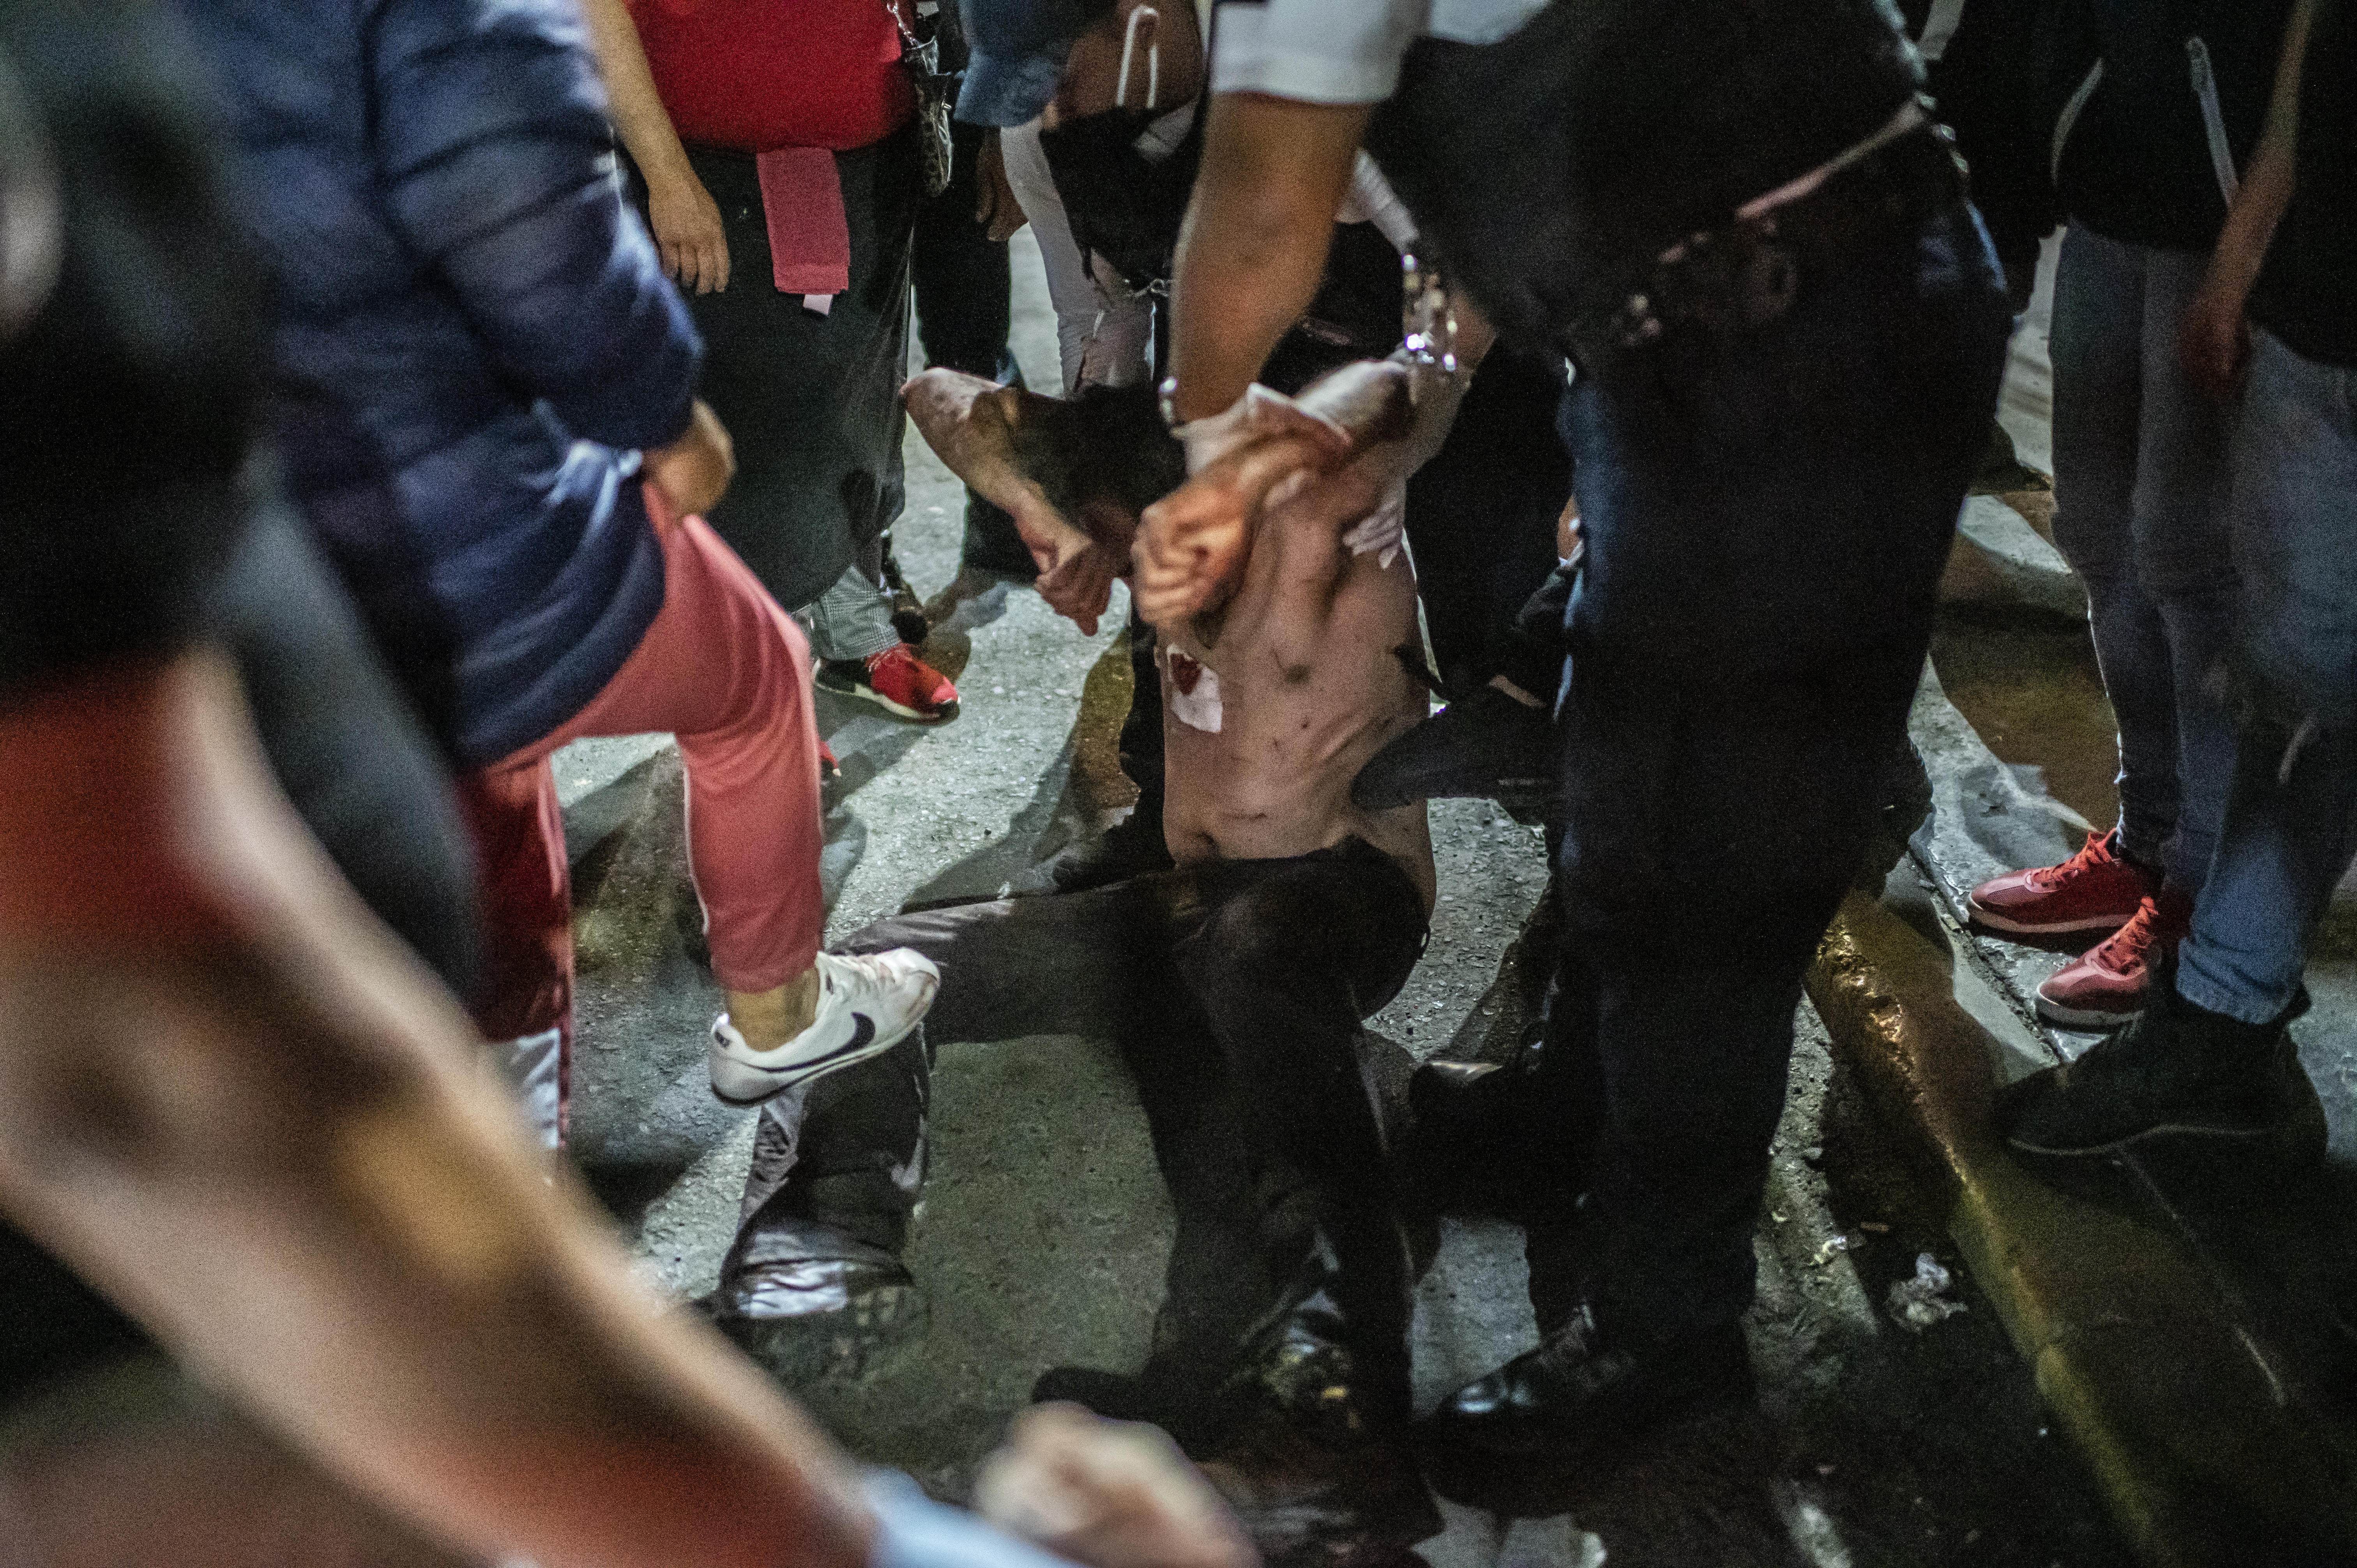 La gente golpea a un hombre acusado de atacar a su madre, en Ciudad Nezahualcóyotl, Estado de México, México, el 20 de junio de 2020, durante la nueva pandemia de coronavirus de COVID-19. (Foto por Pedro PARDO / AFP)